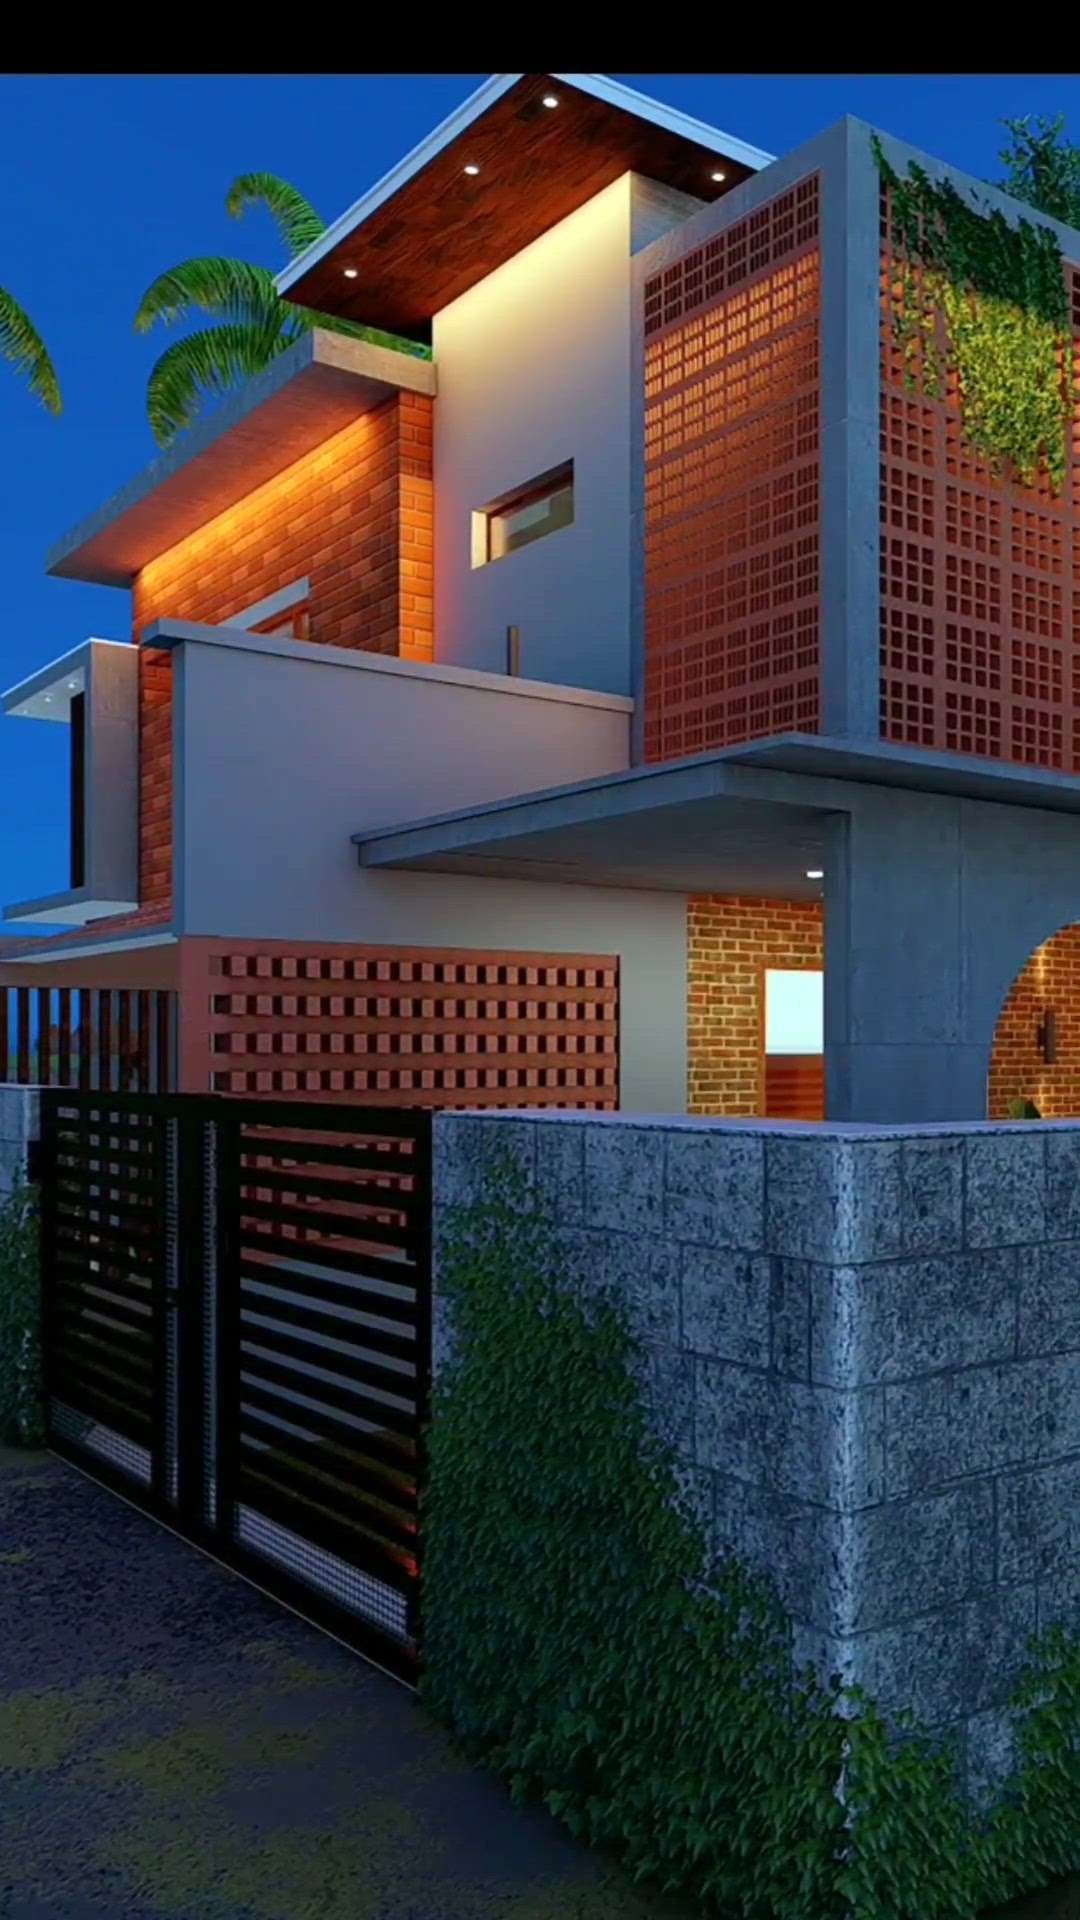 ഇഷ്ടപ്പെട്ടാൽ llike ചെയ്‌തോളൂ👍
client :Mr.Gautham vijay @palkkadu 
1800 sqft 
 #3dhomeelevation  #Architect  #exterior3dvisualization  #looking  #modernhome2d_plan_3delevation  #3BHKHouse///  #koloviral  #3d  #architectureldesigns  #3Darchitecture  #budjethome